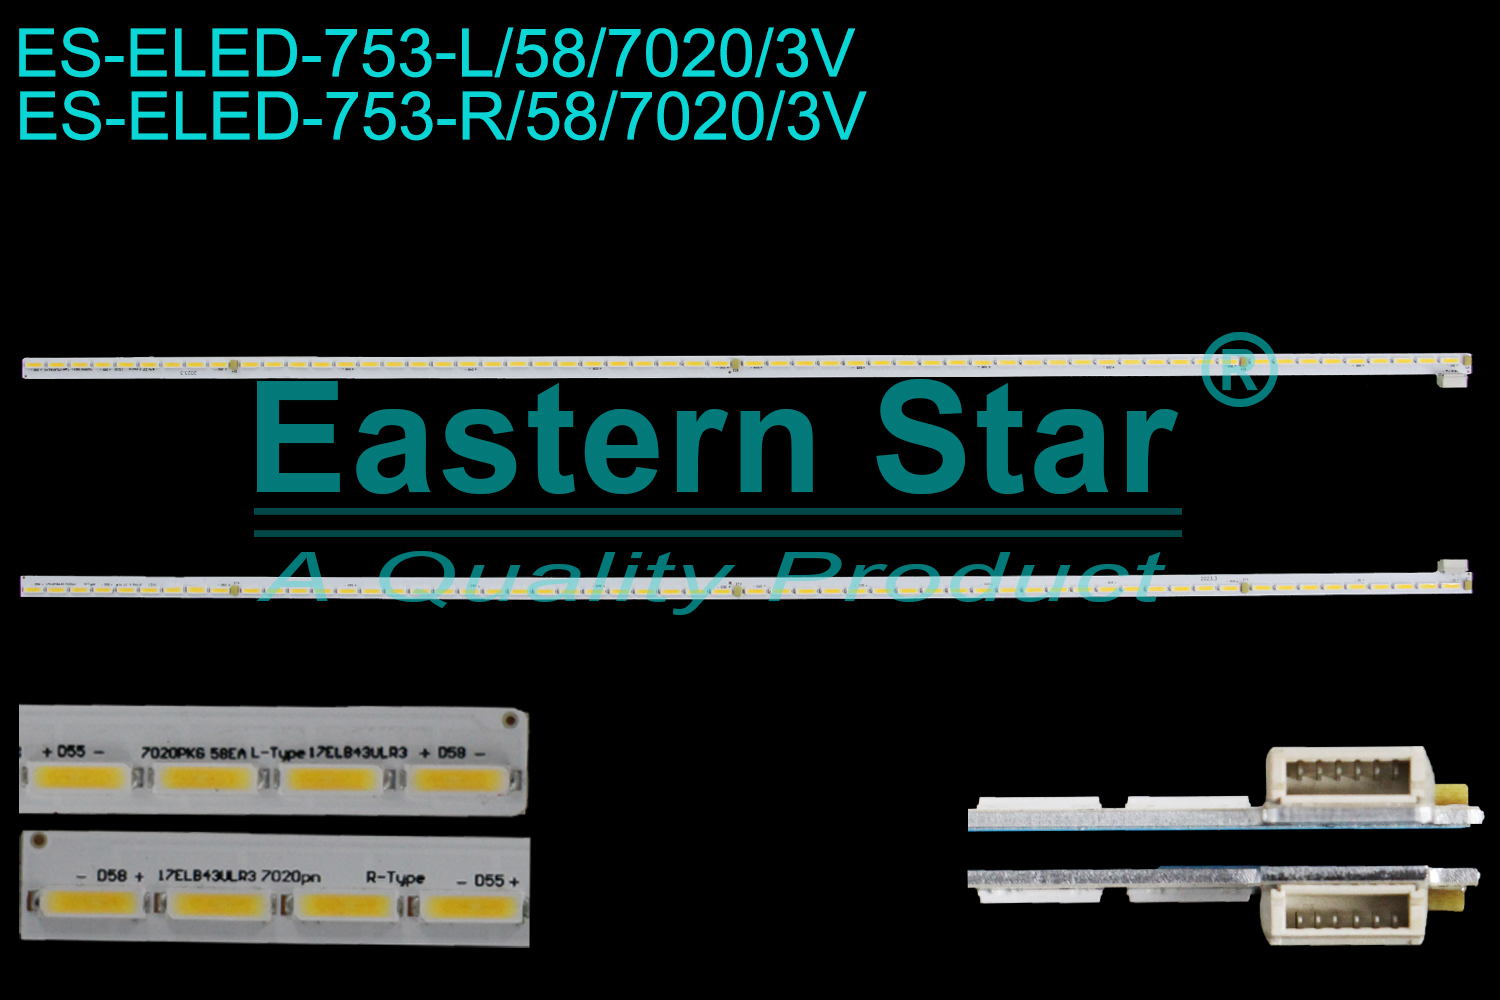 ES-ELED-753 ELED/EDGE TV backlight use for 43'' Vestel  43FB755 L: 17ELB43ULR3 7020PKG 58EA L-TYPE 1538  R: 17ELB43ULR3 7020PKG 58EA R-TYPE 1541 LED STRIPS(2)